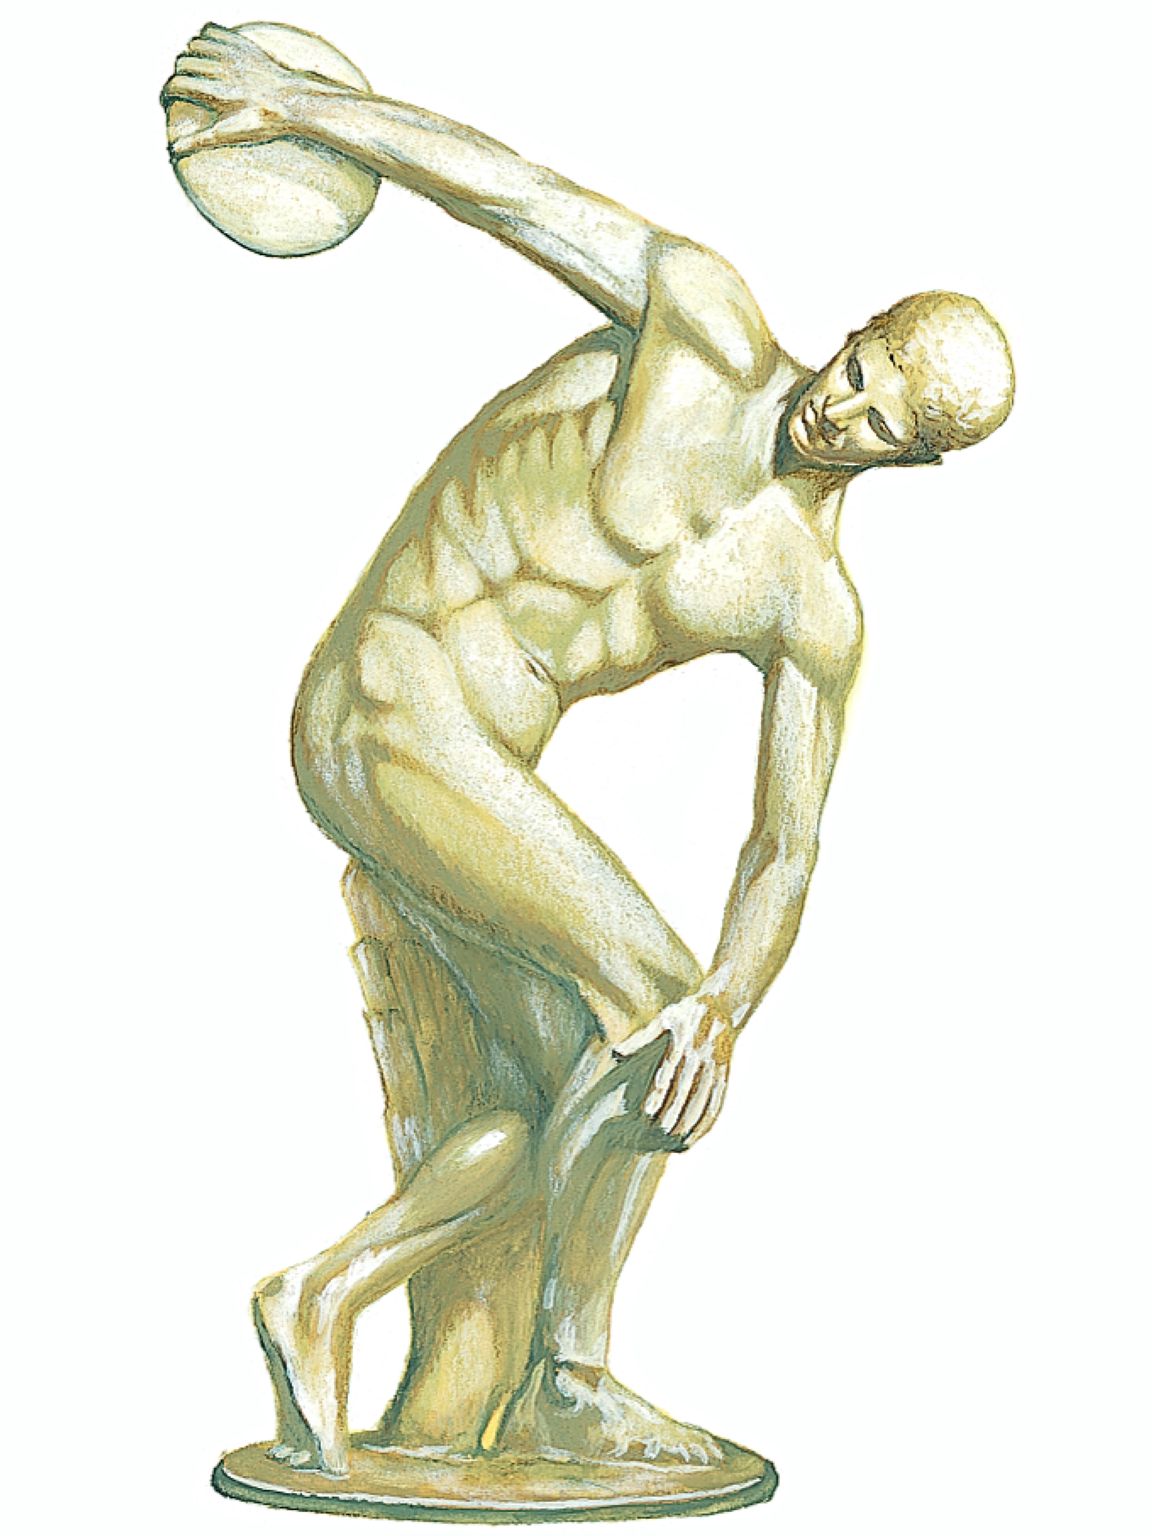 le Discobole, l’une des plus célèbres statues de l’Antiquité